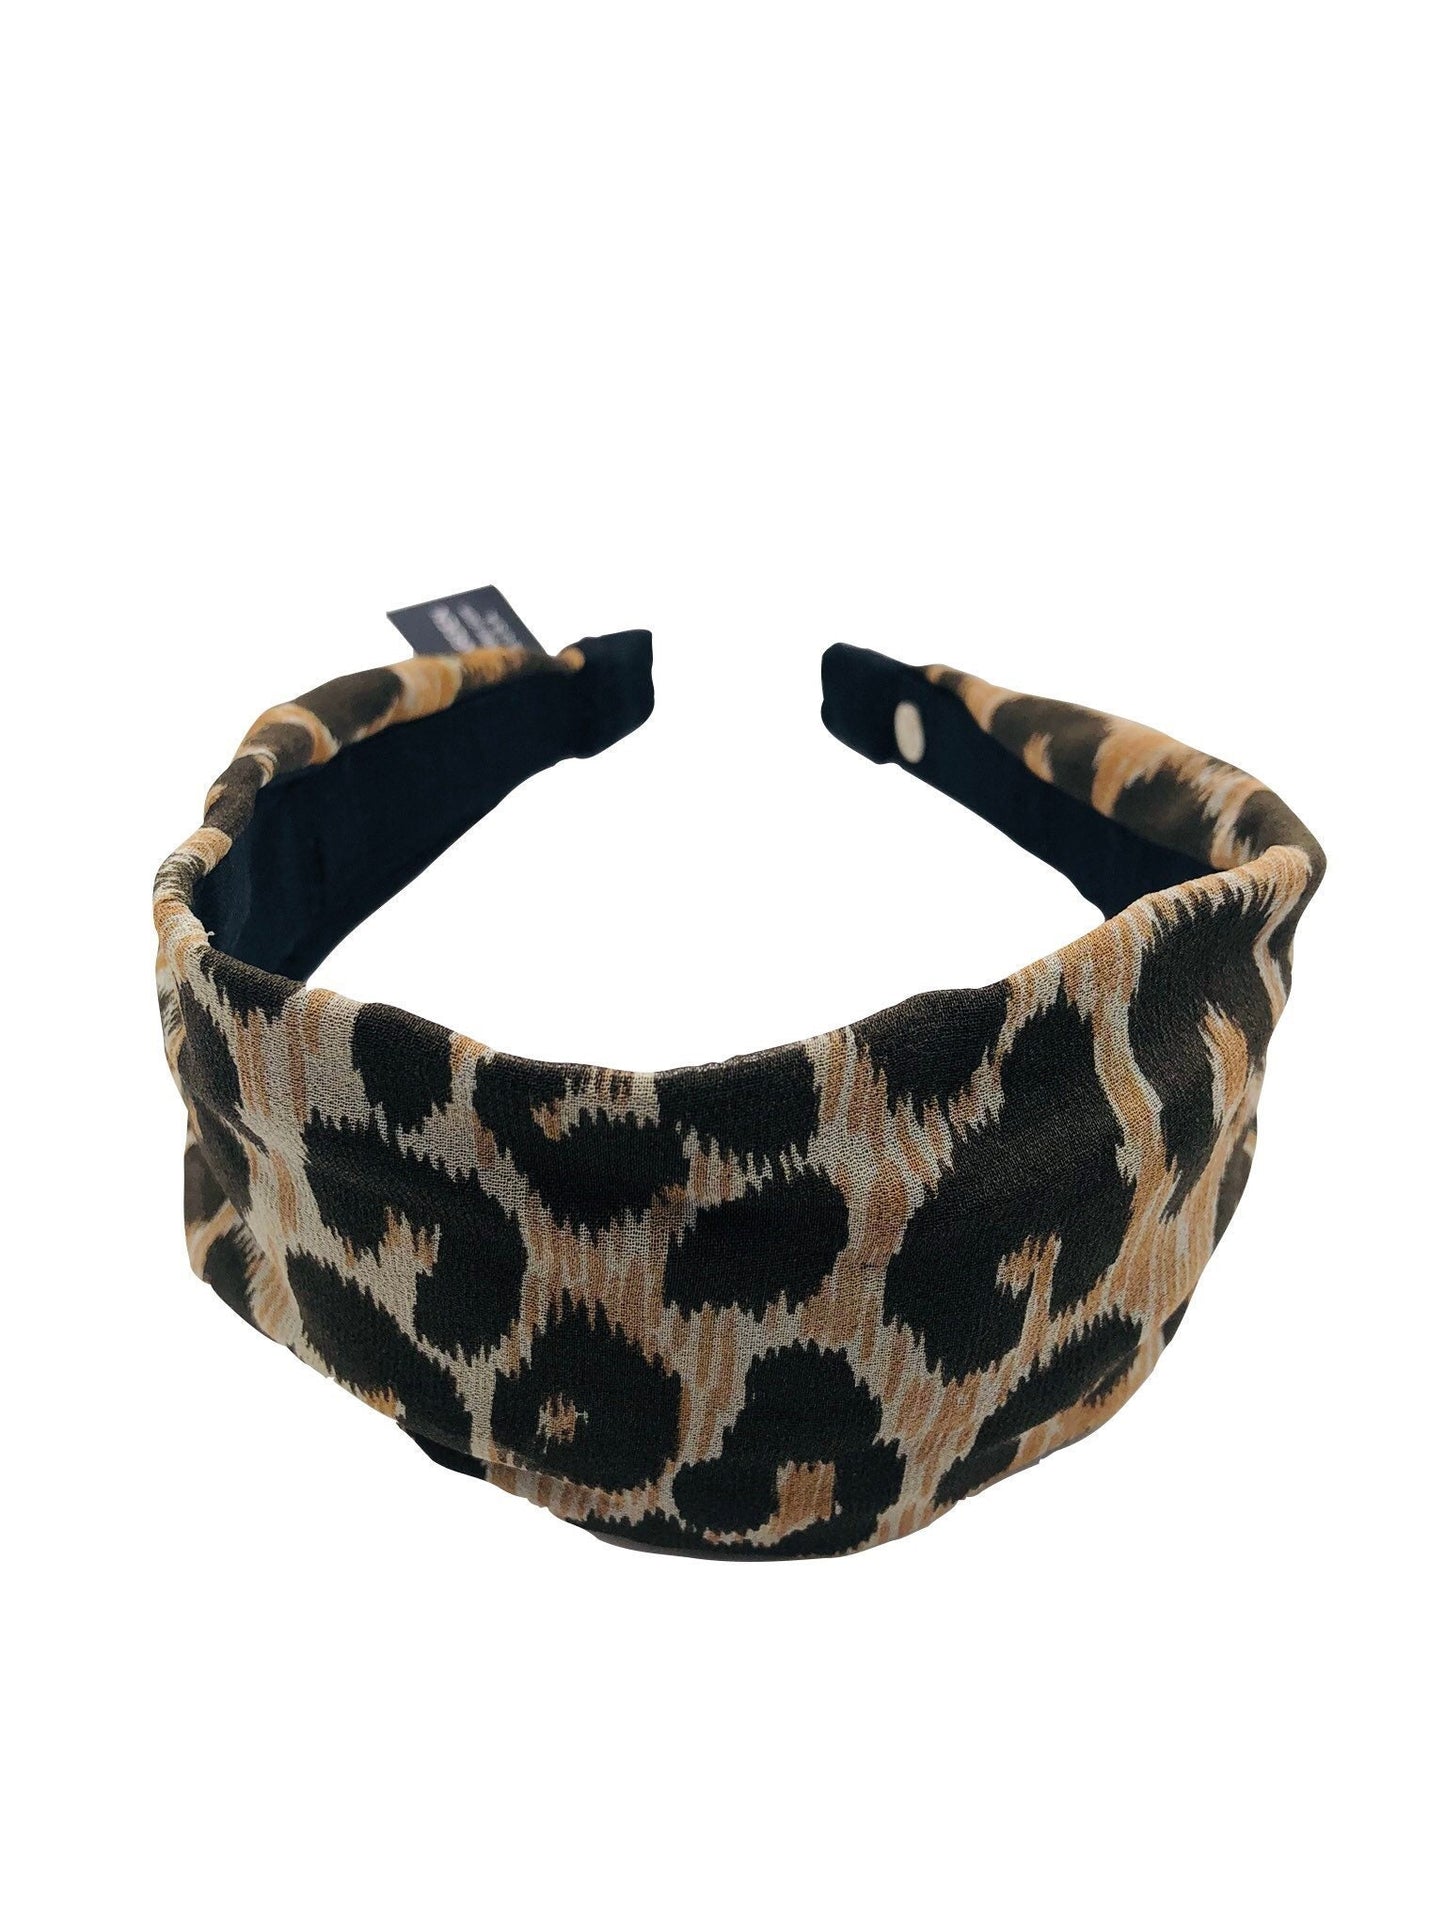 Karin's Garden 3" Leopard Silk Scarf Headband.  Handmade in the USA